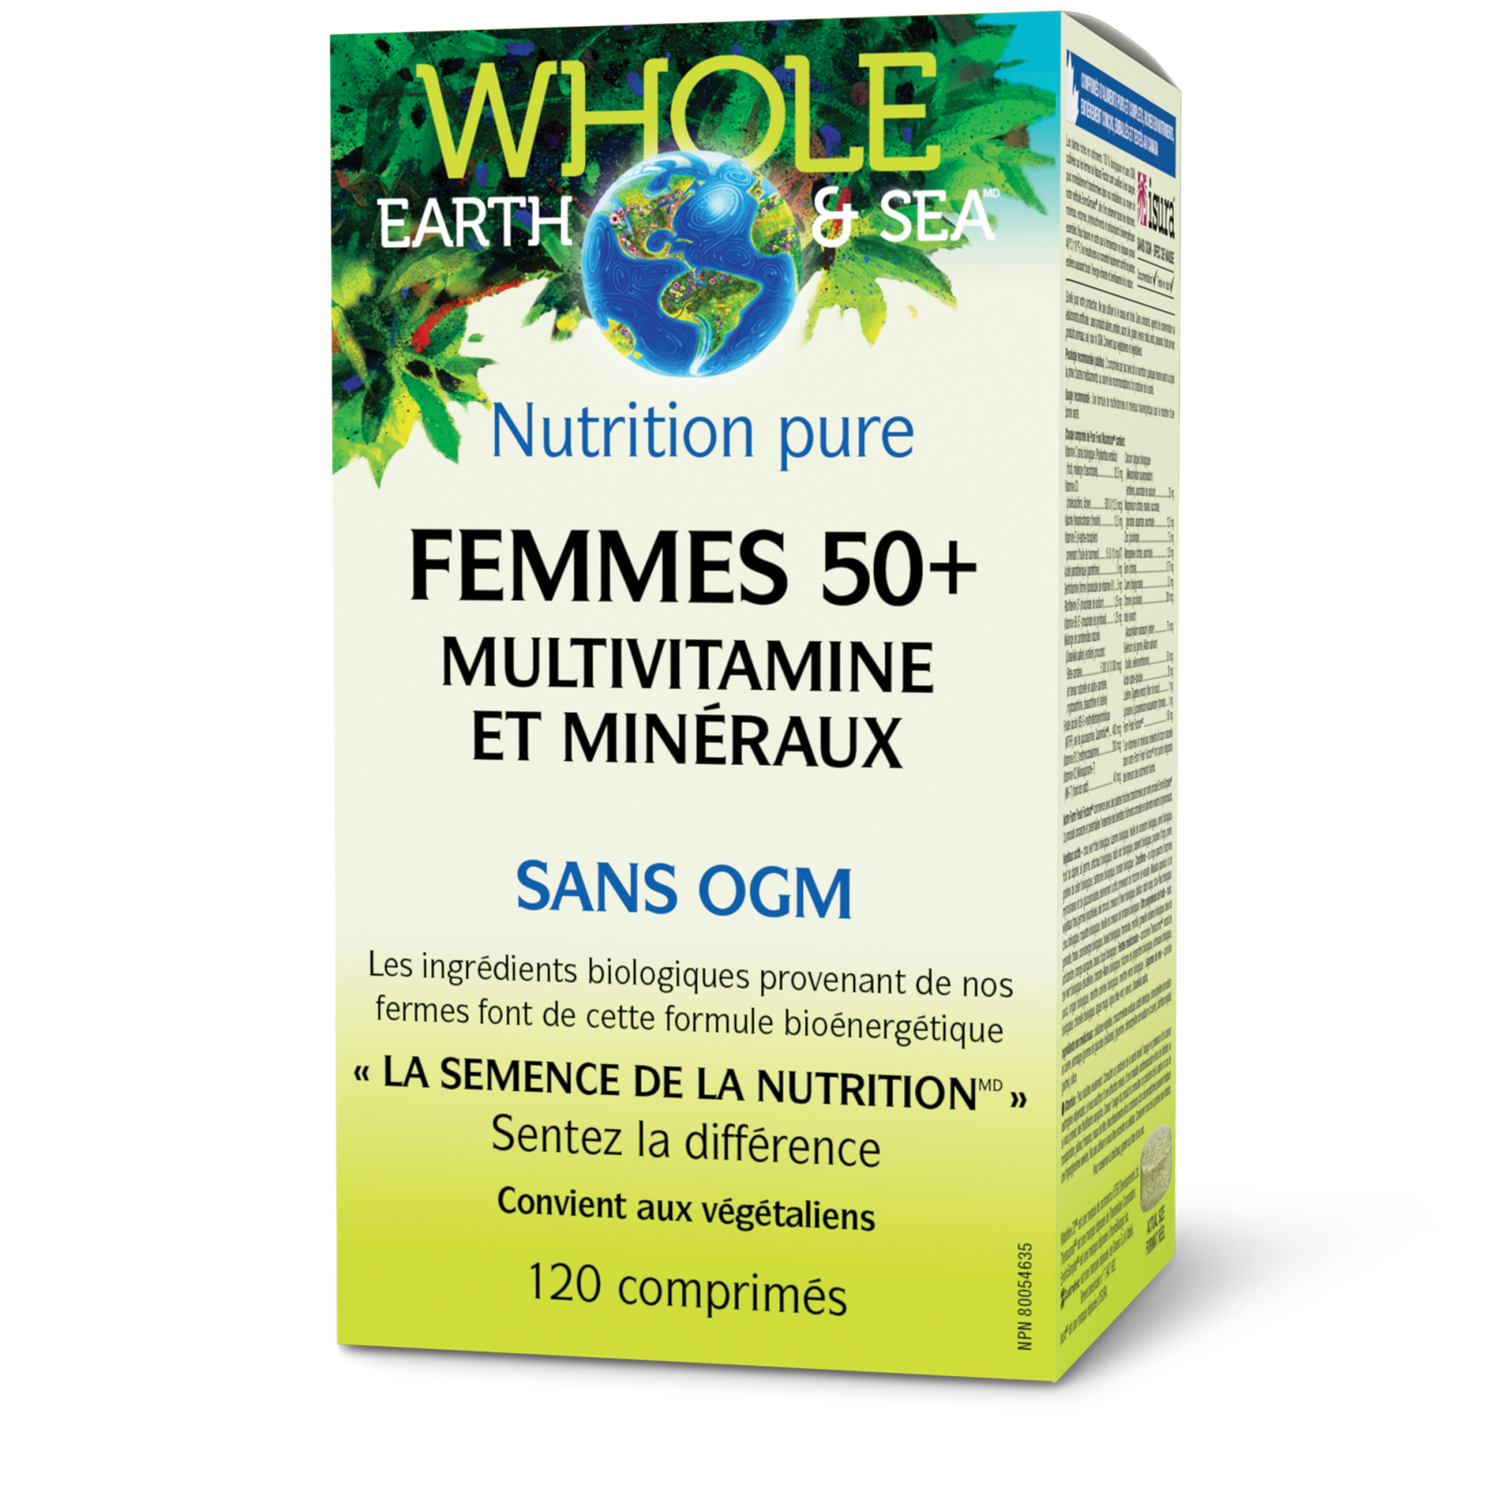 Multivitamine et minéraux Femmes 50+, Whole Earth & Sea, Whole Earth & Sea®|v|image|35519